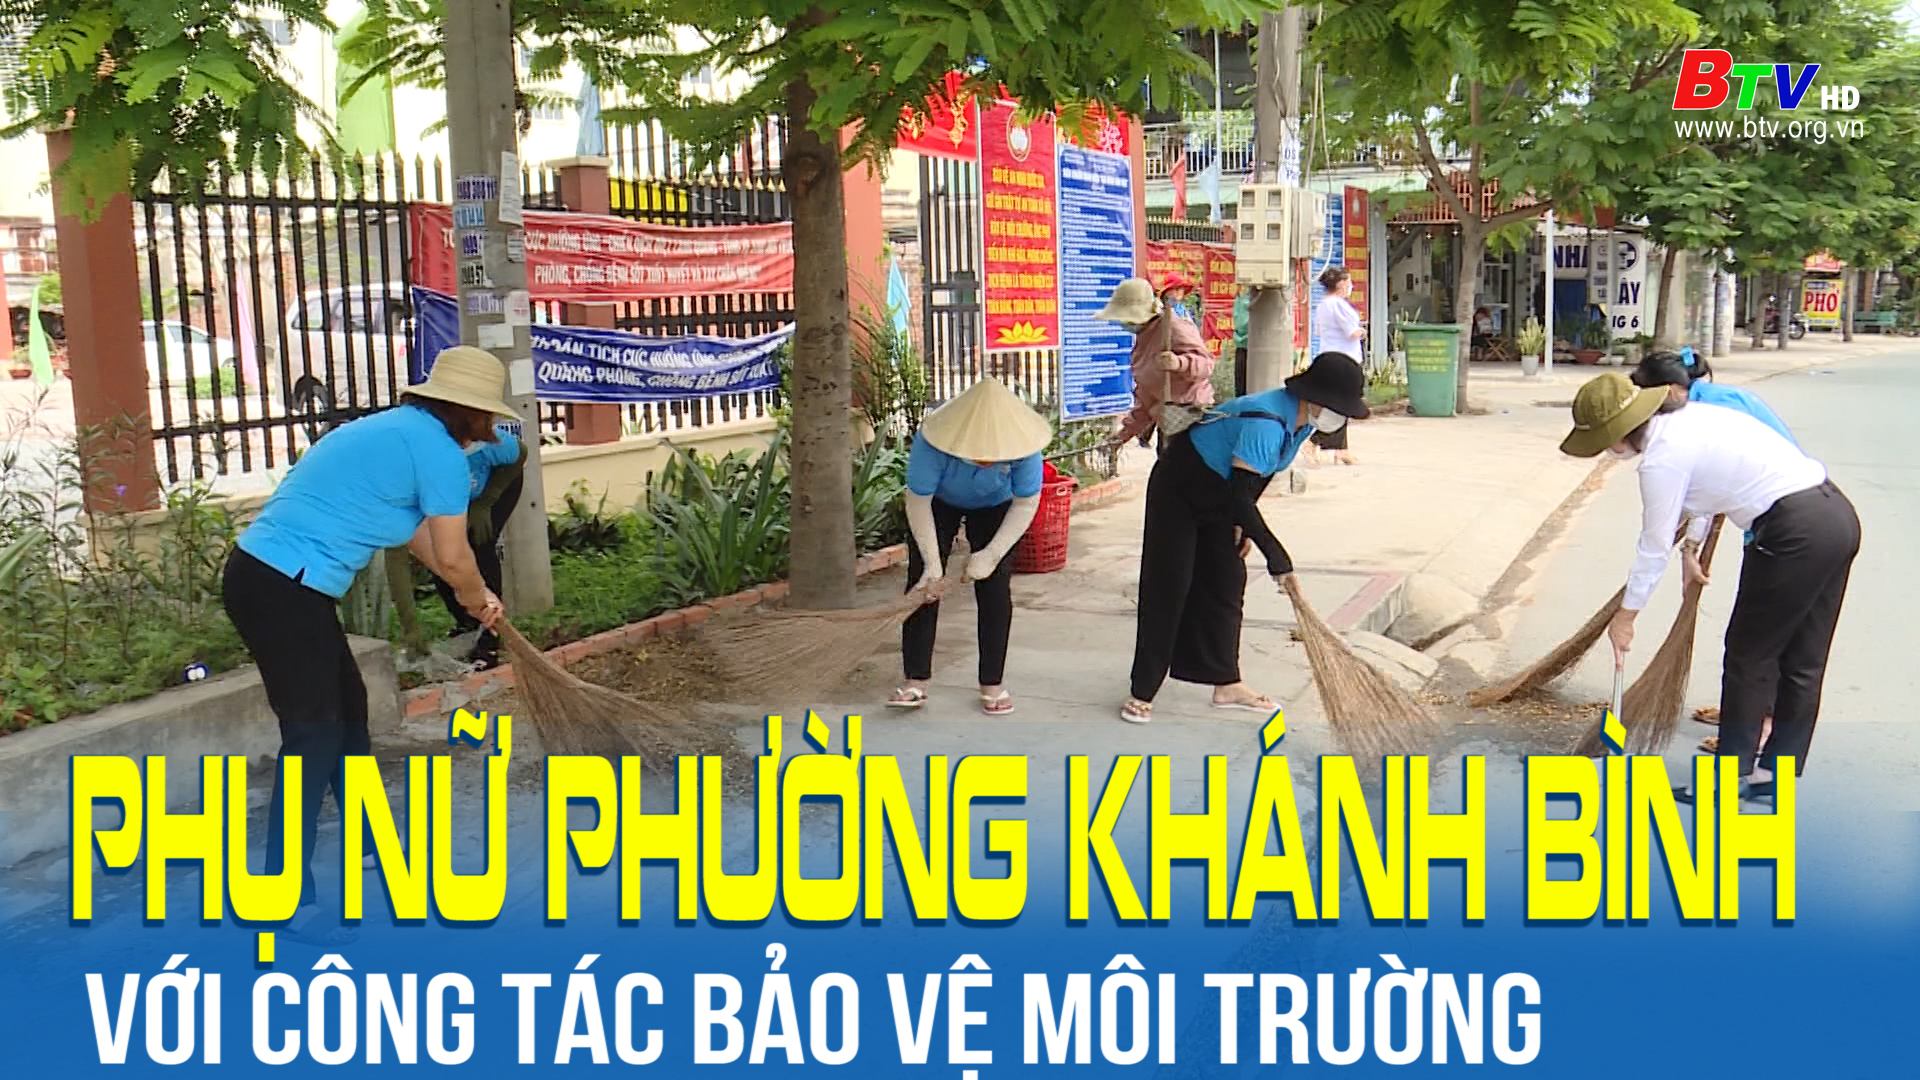 Phụ nữ phường Khánh Bình với công tác bảo vệ môi trường